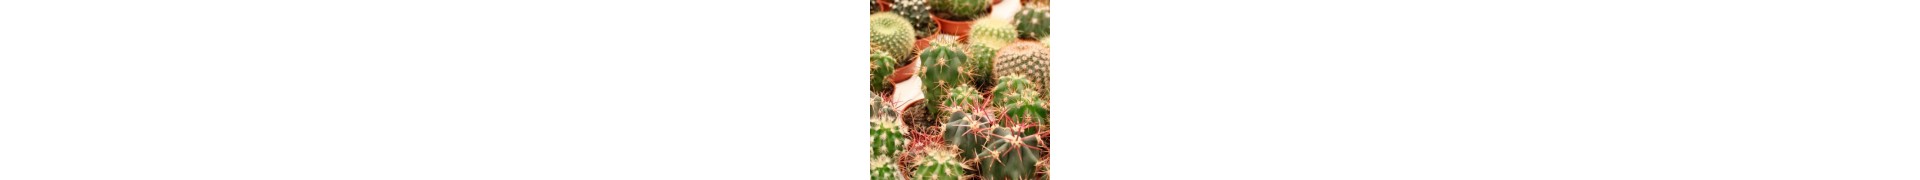 Comprar cactus y suculentas online | La Majosa